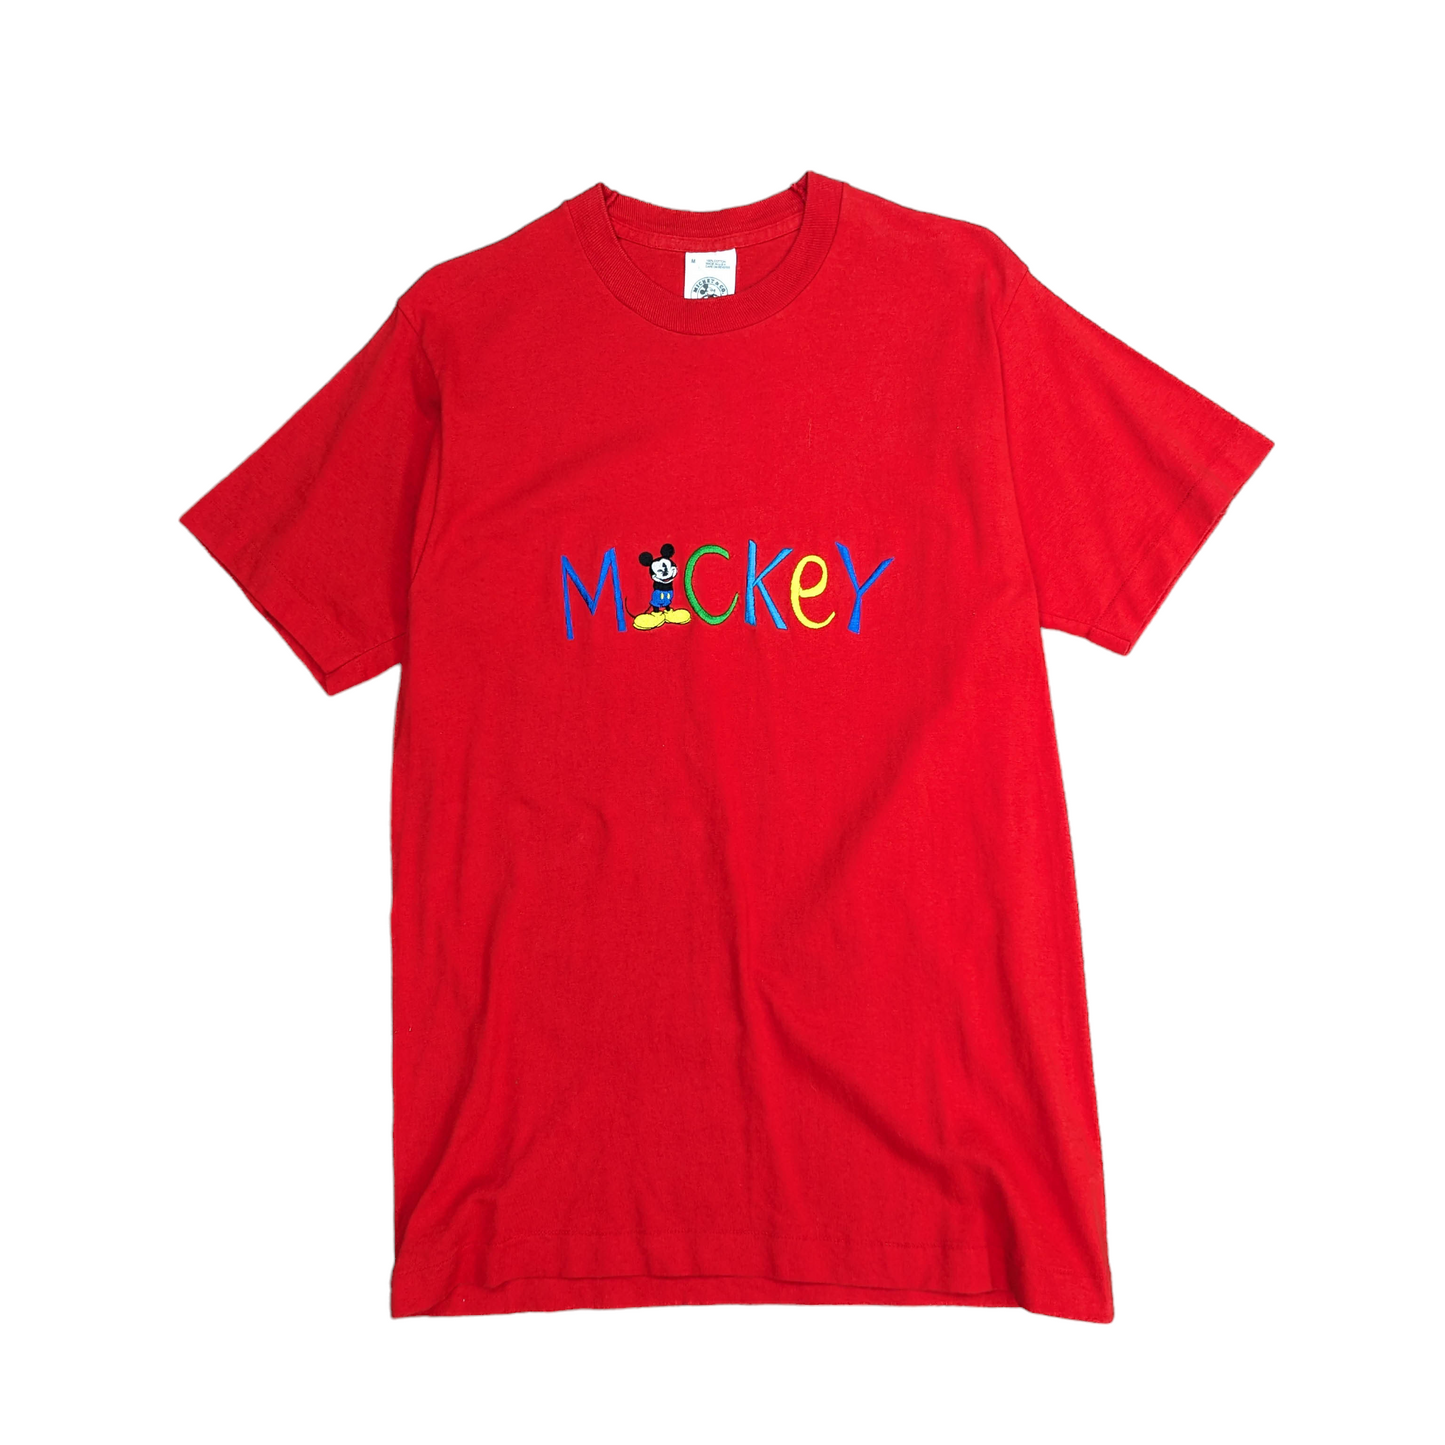 Mickey & Co Single Stitch T-Shirt Size M